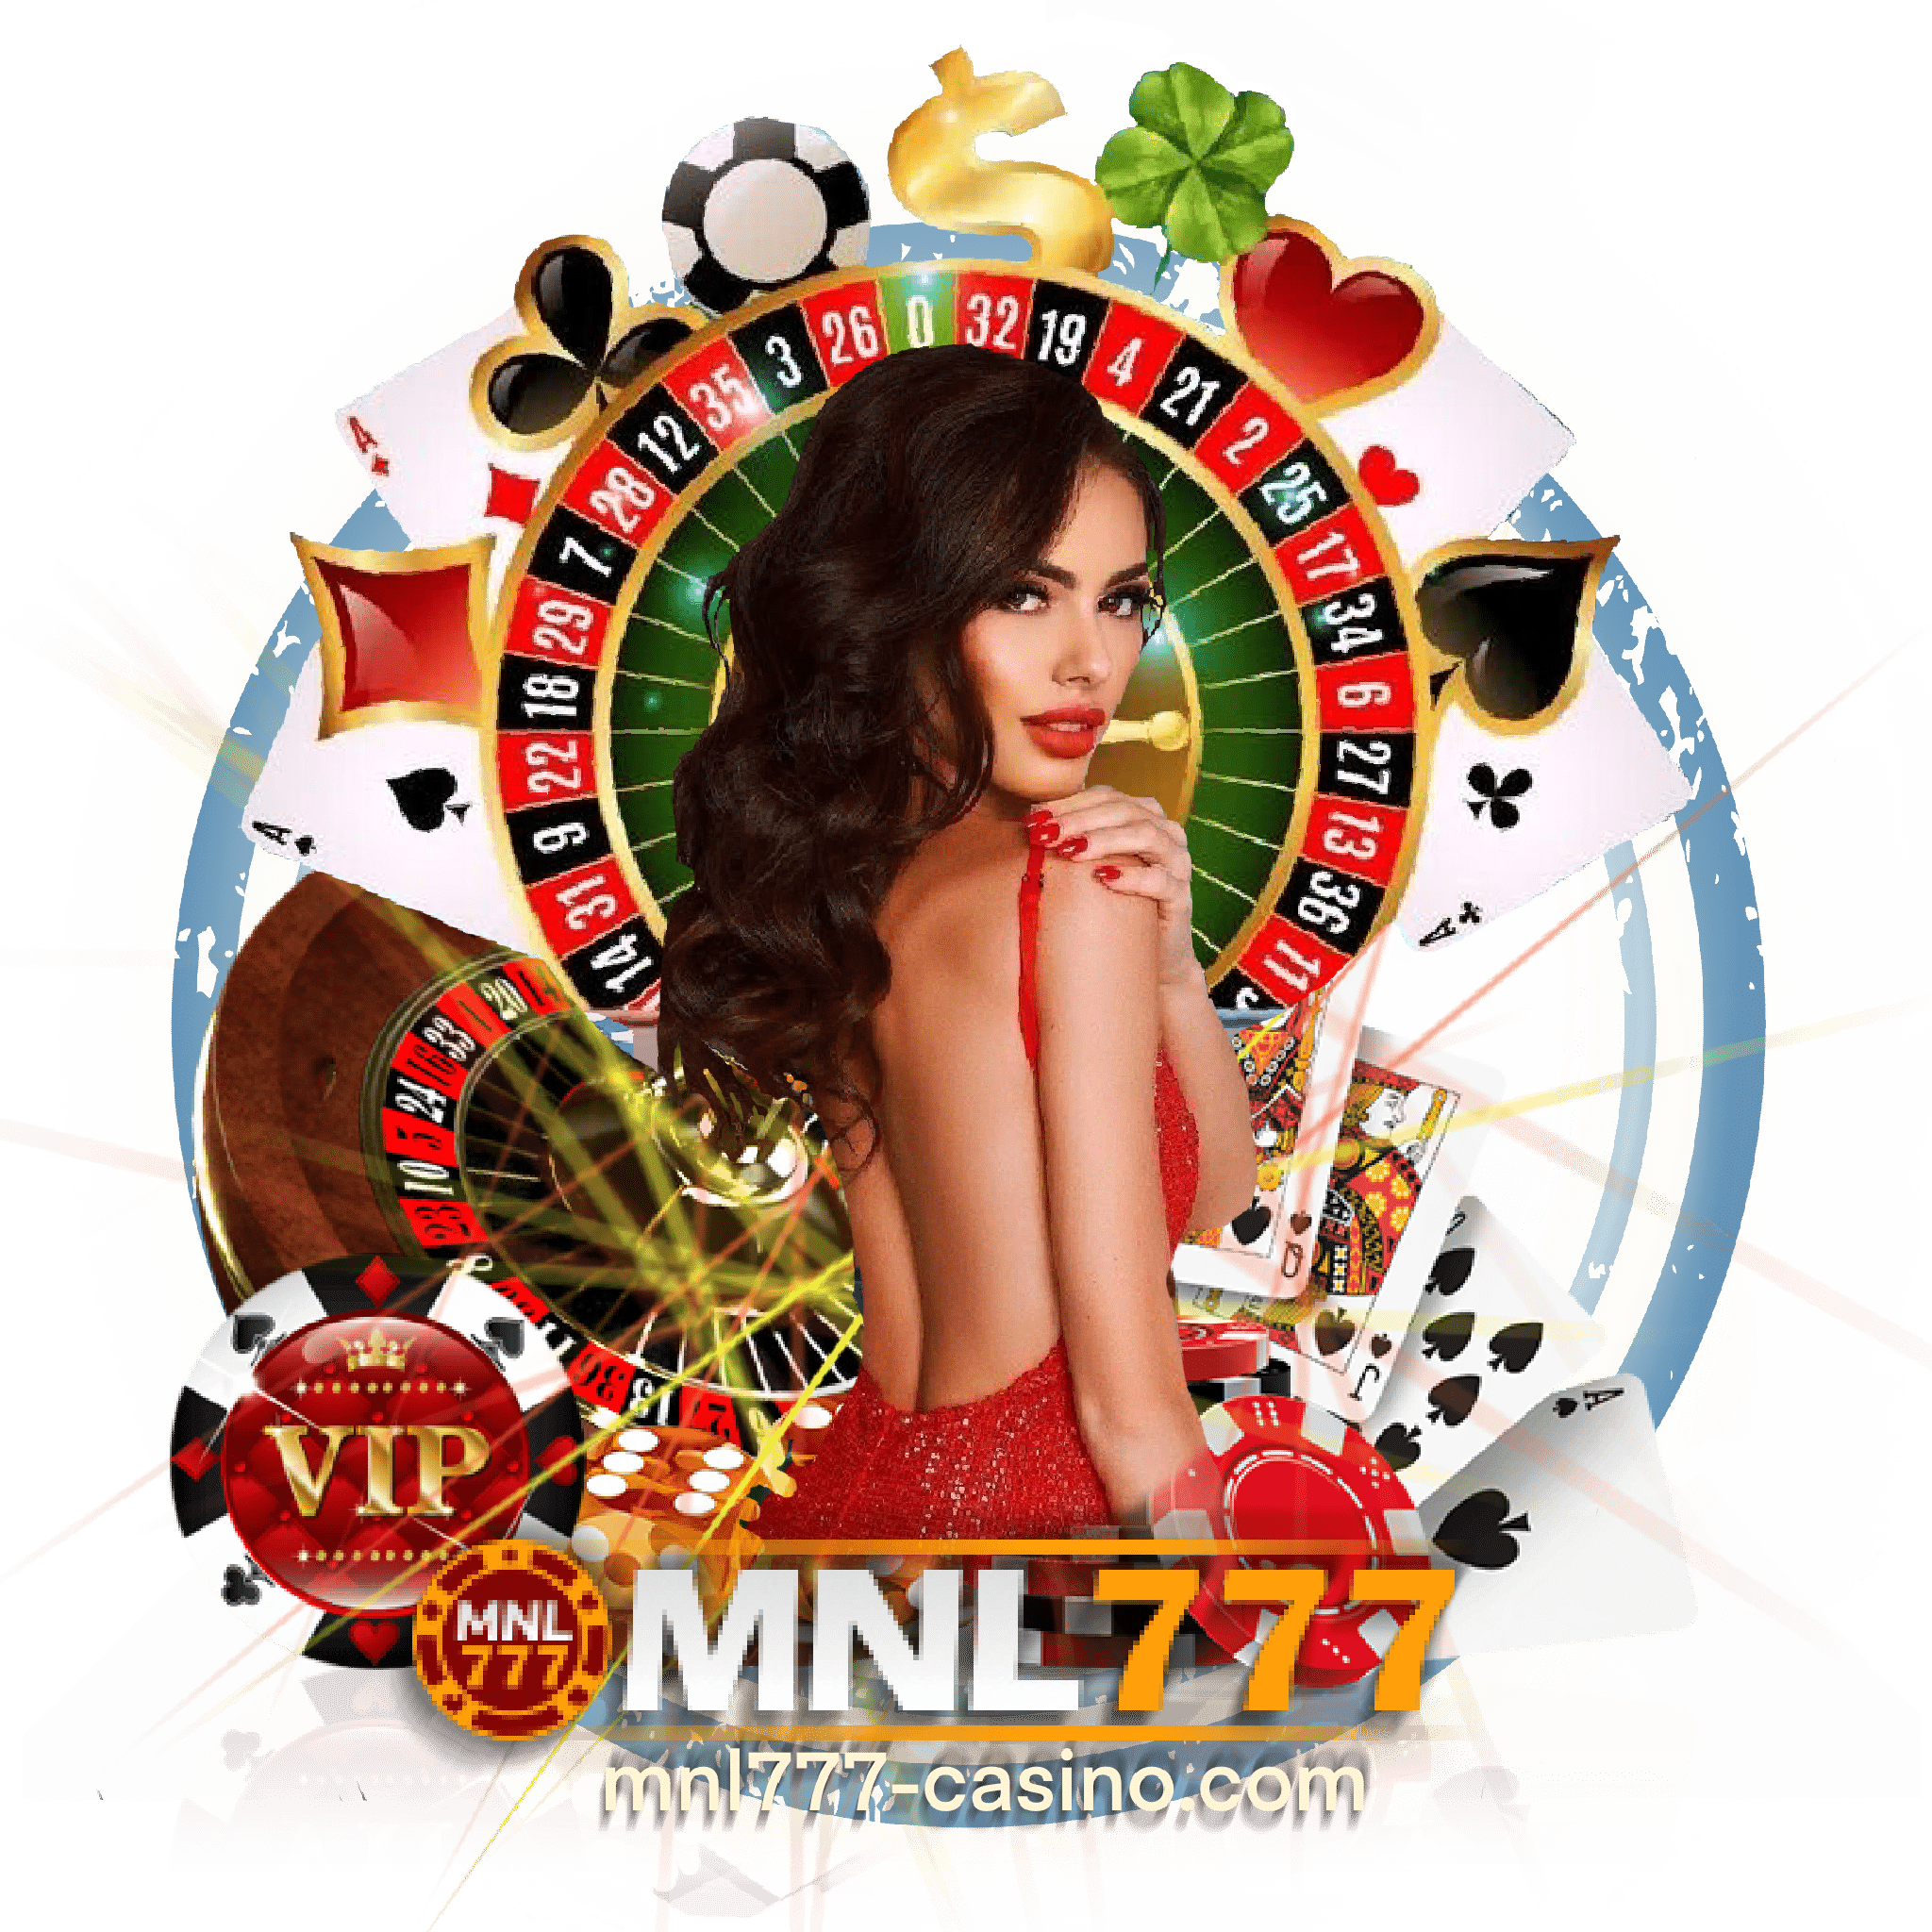 mnl777 online casino